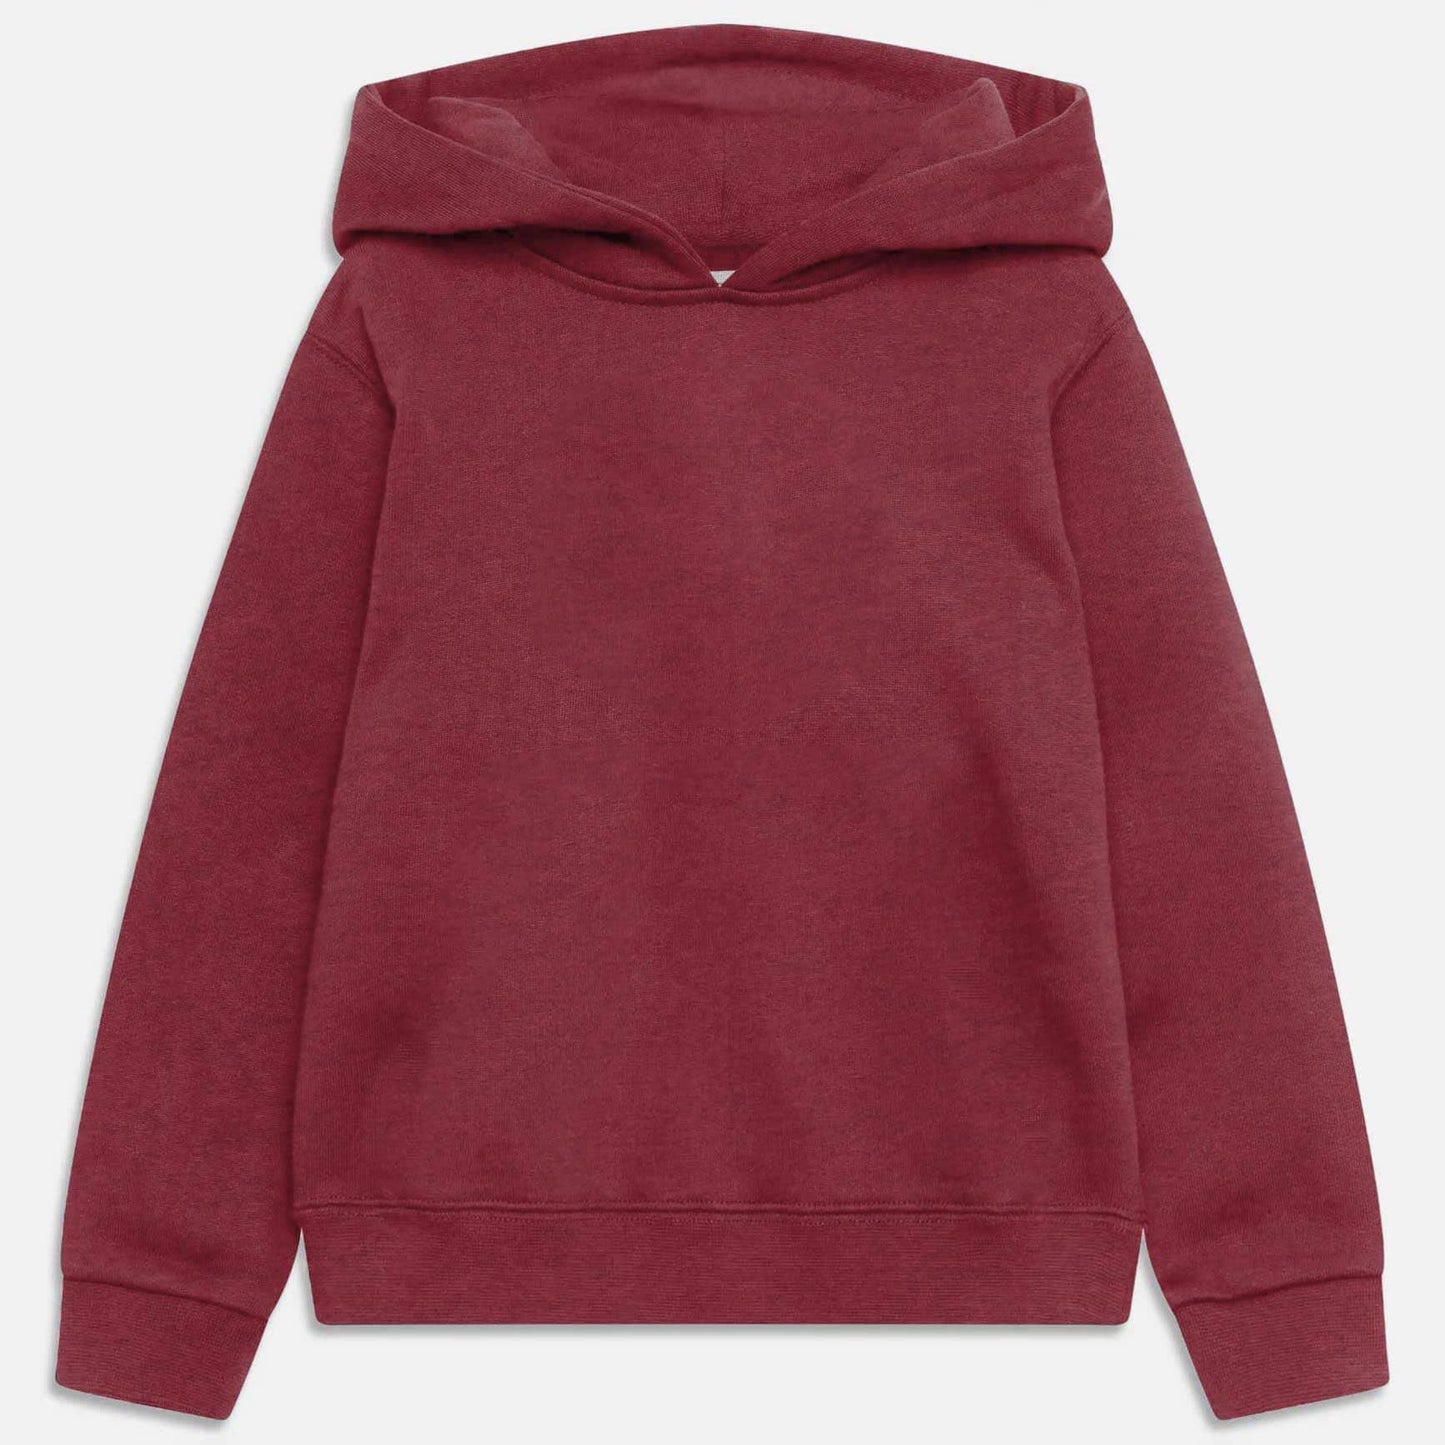 Rabbit Skins Kid's Solid Design Fleece Pullover Hoodie Boy's Pullover Hoodie Minhas Garments Brick Red 2 Years 